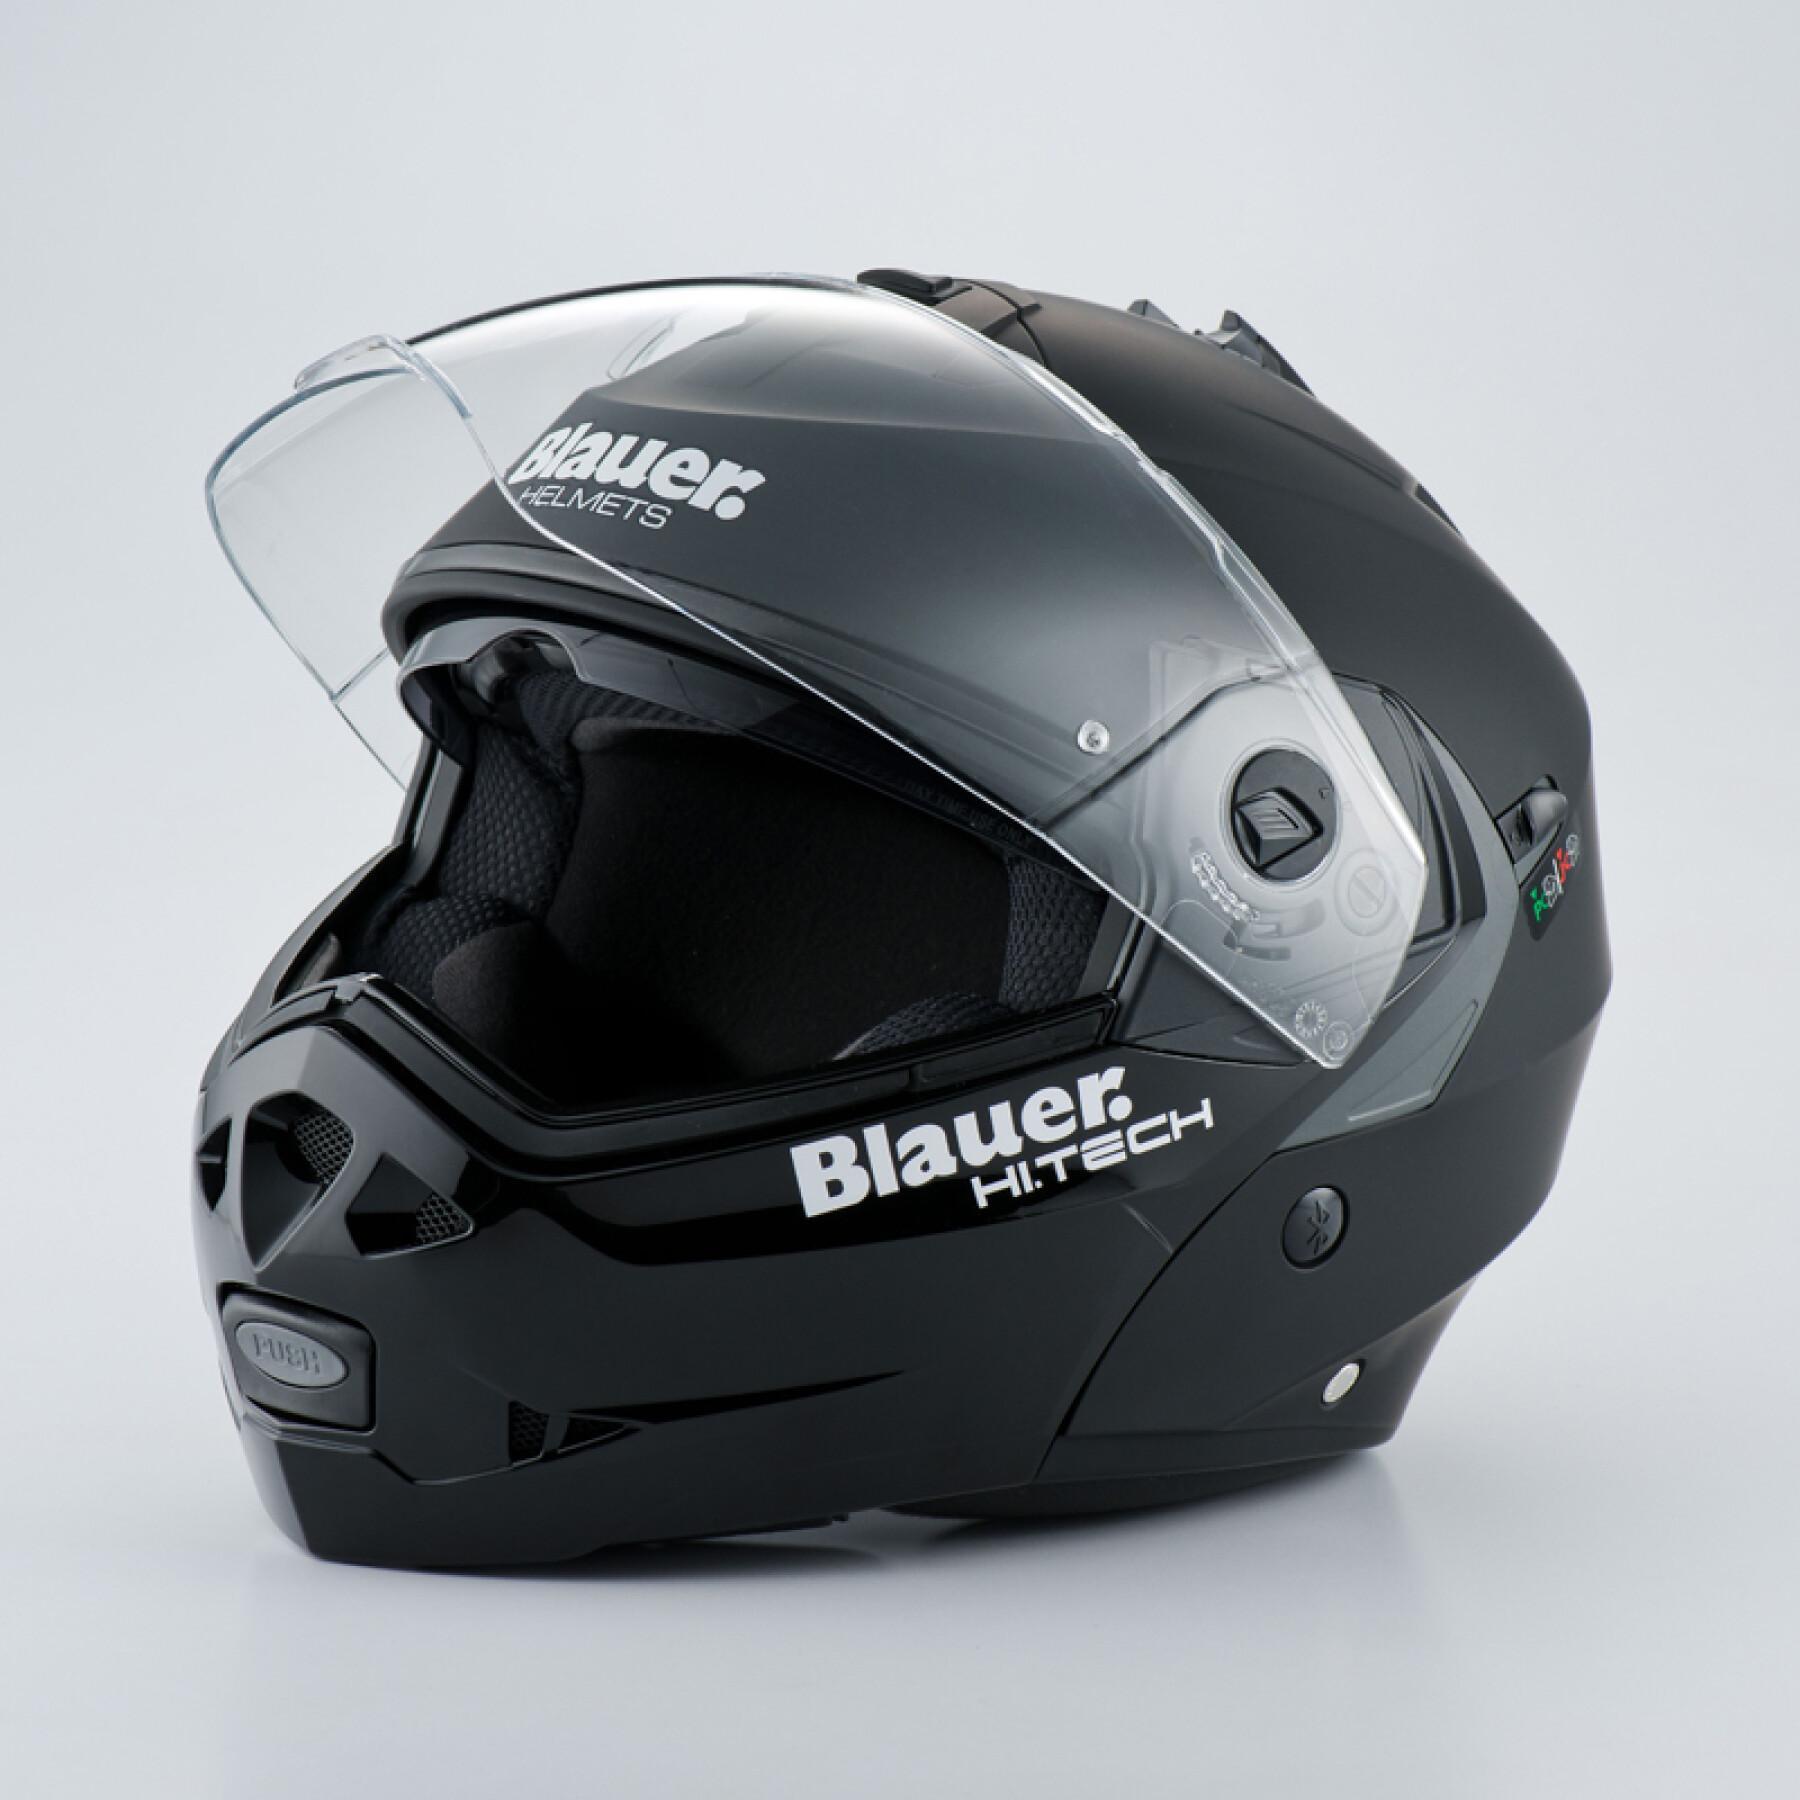 Modular motorcycle helmet Blauer Sky